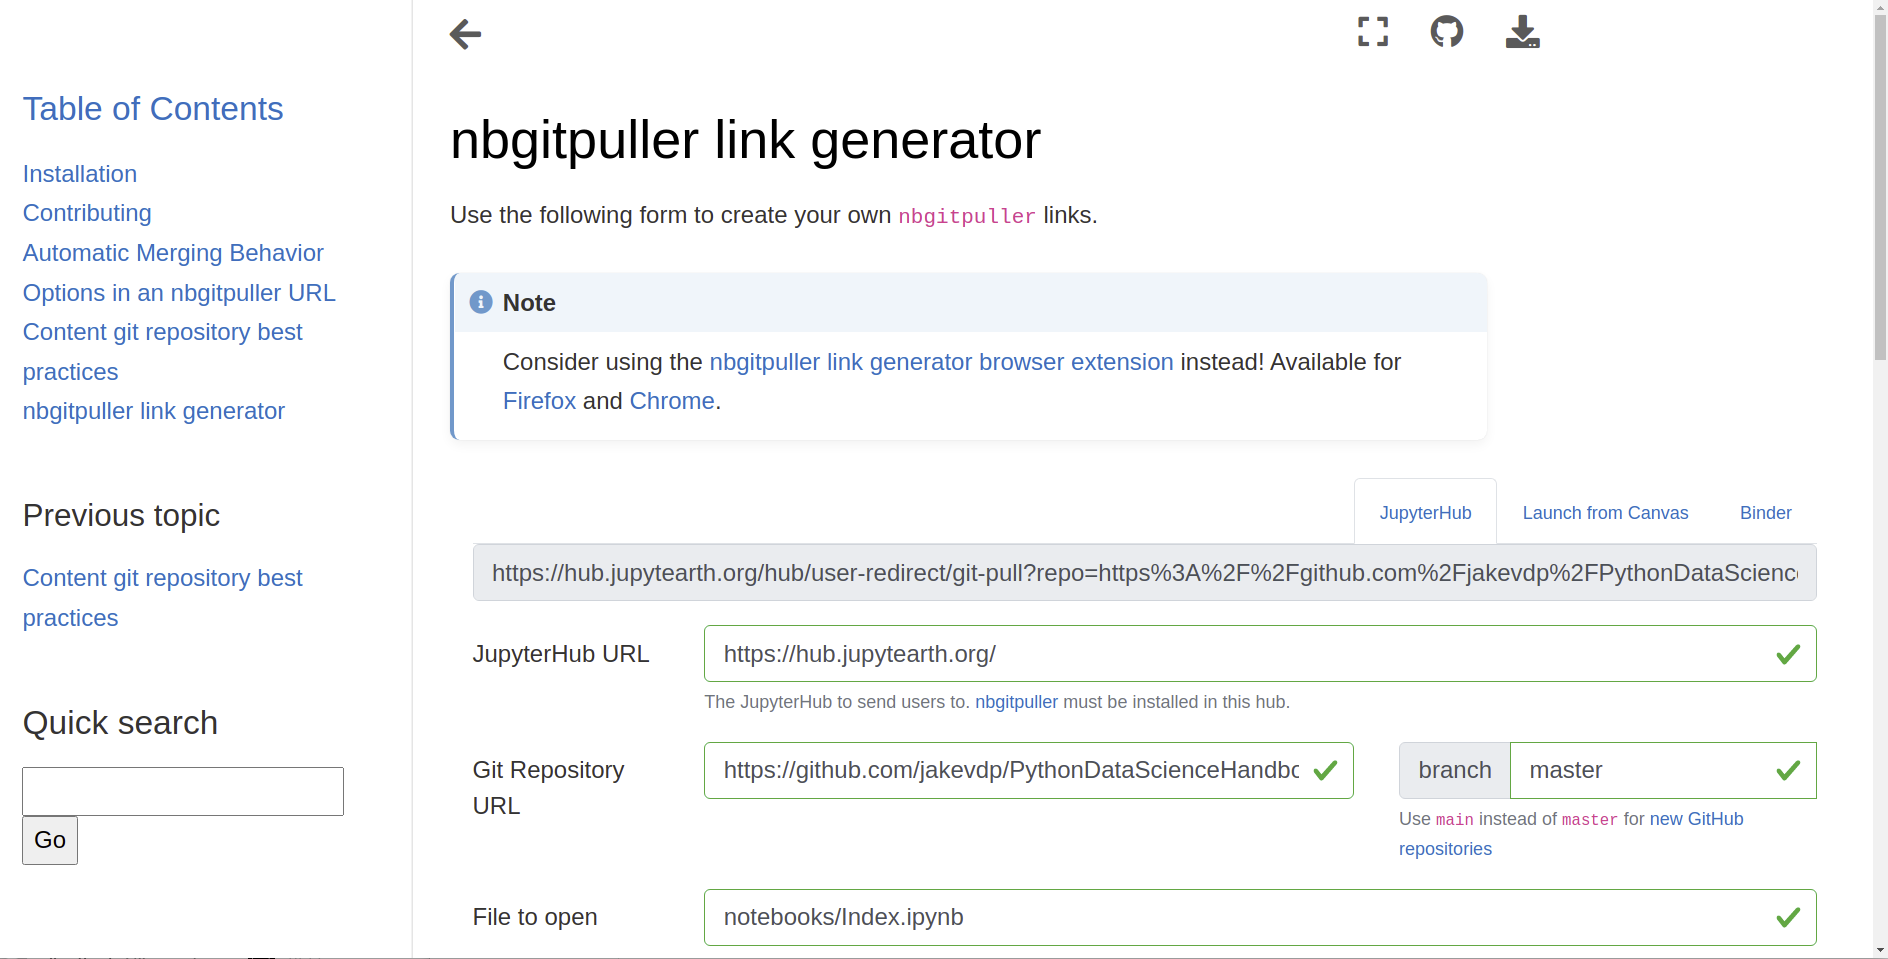 _images/nbgitpuller-link-generator.png